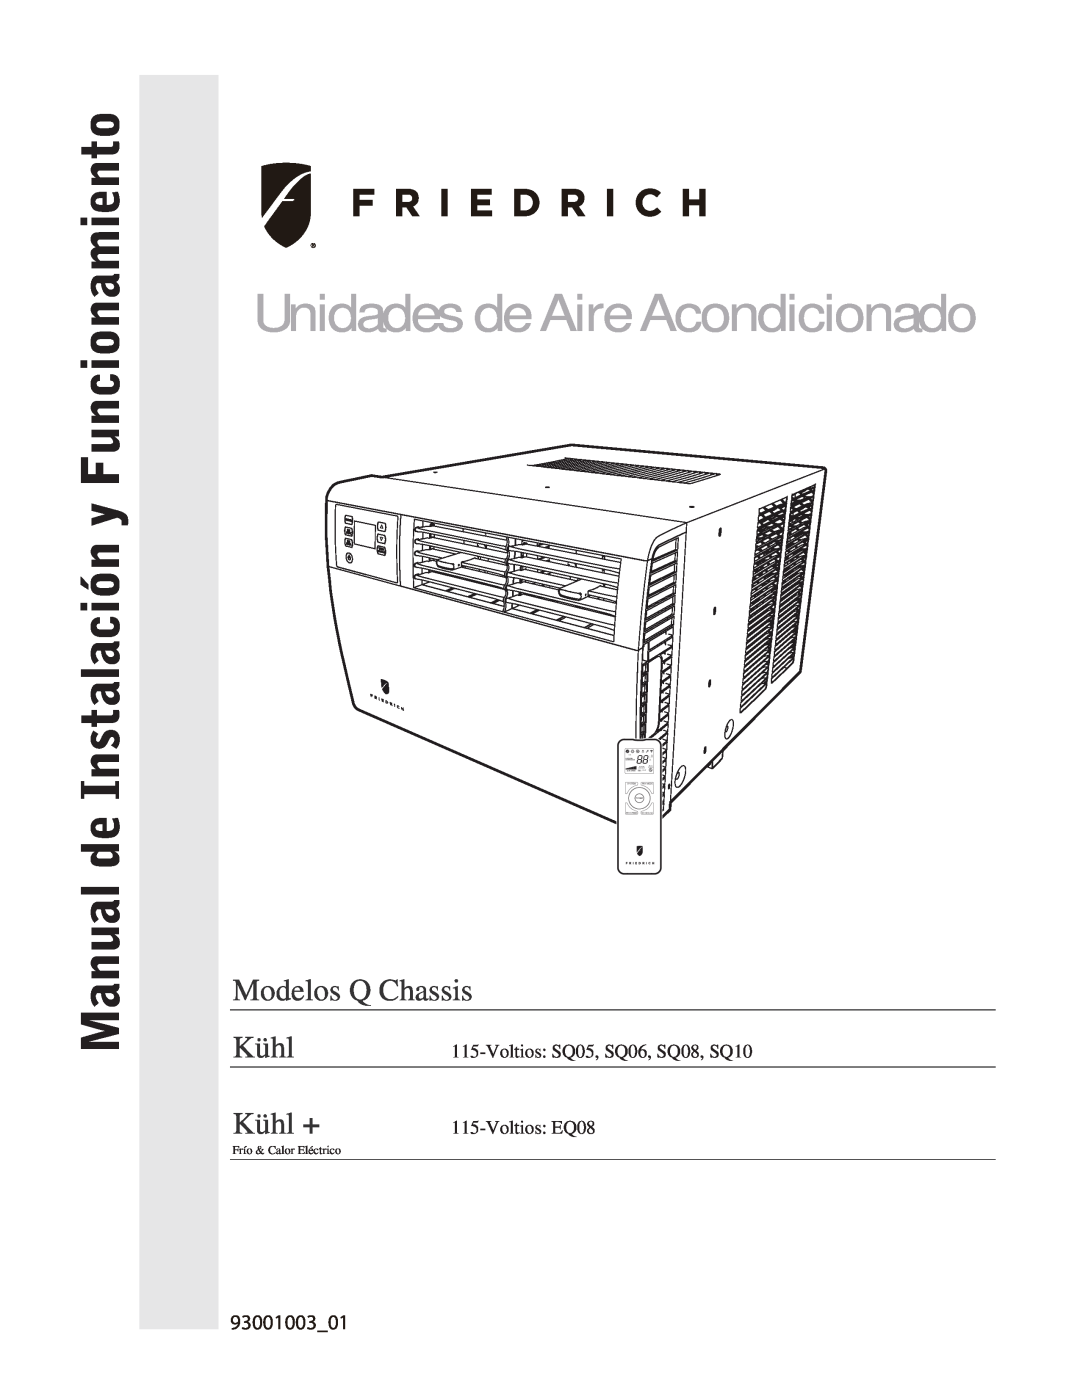 Friedrich SQ06, SQ10 Unidades de Aire Acondicionado, Manual de Instalación y Funcionamiento, Modelos Q Chassis, Kühl + 